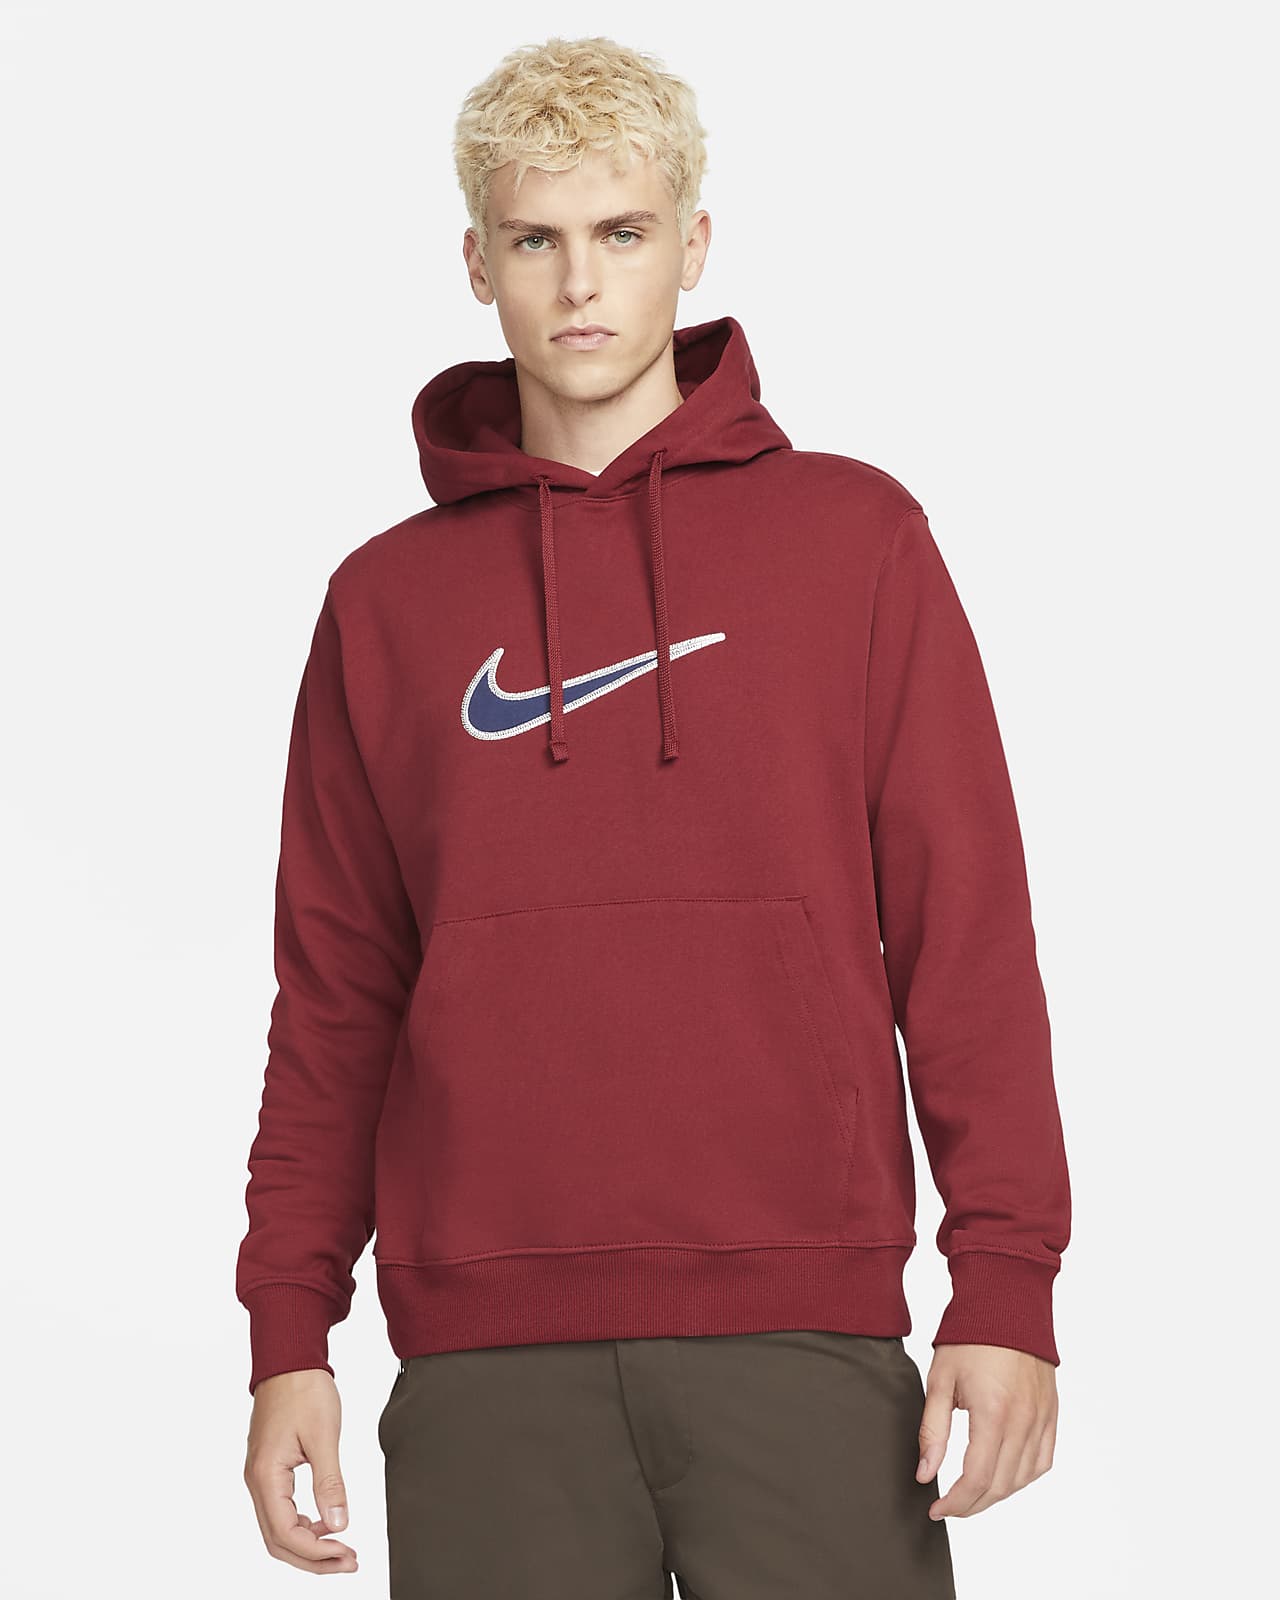 Huvtröja Nike Sportswear Swoosh i fleece för män